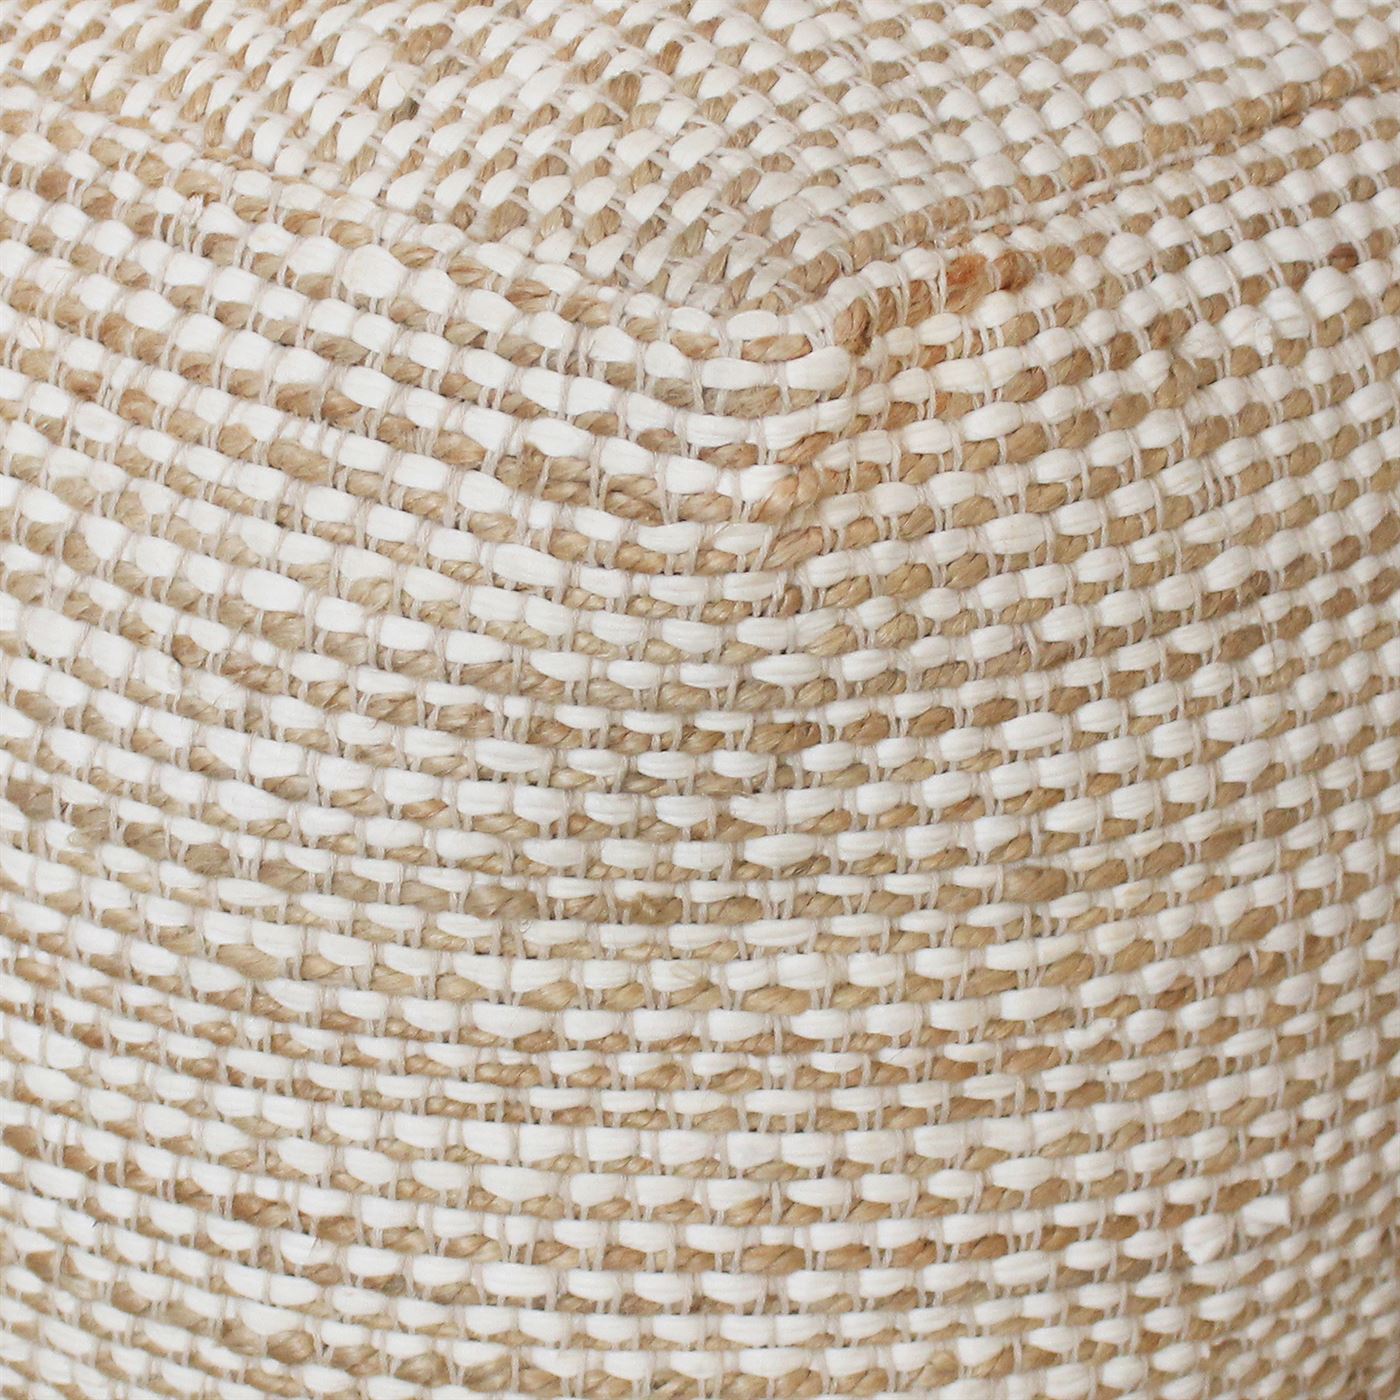 Abella Pouf, Cotton, Hemp, Natural White, Pitloom, Flat Weave